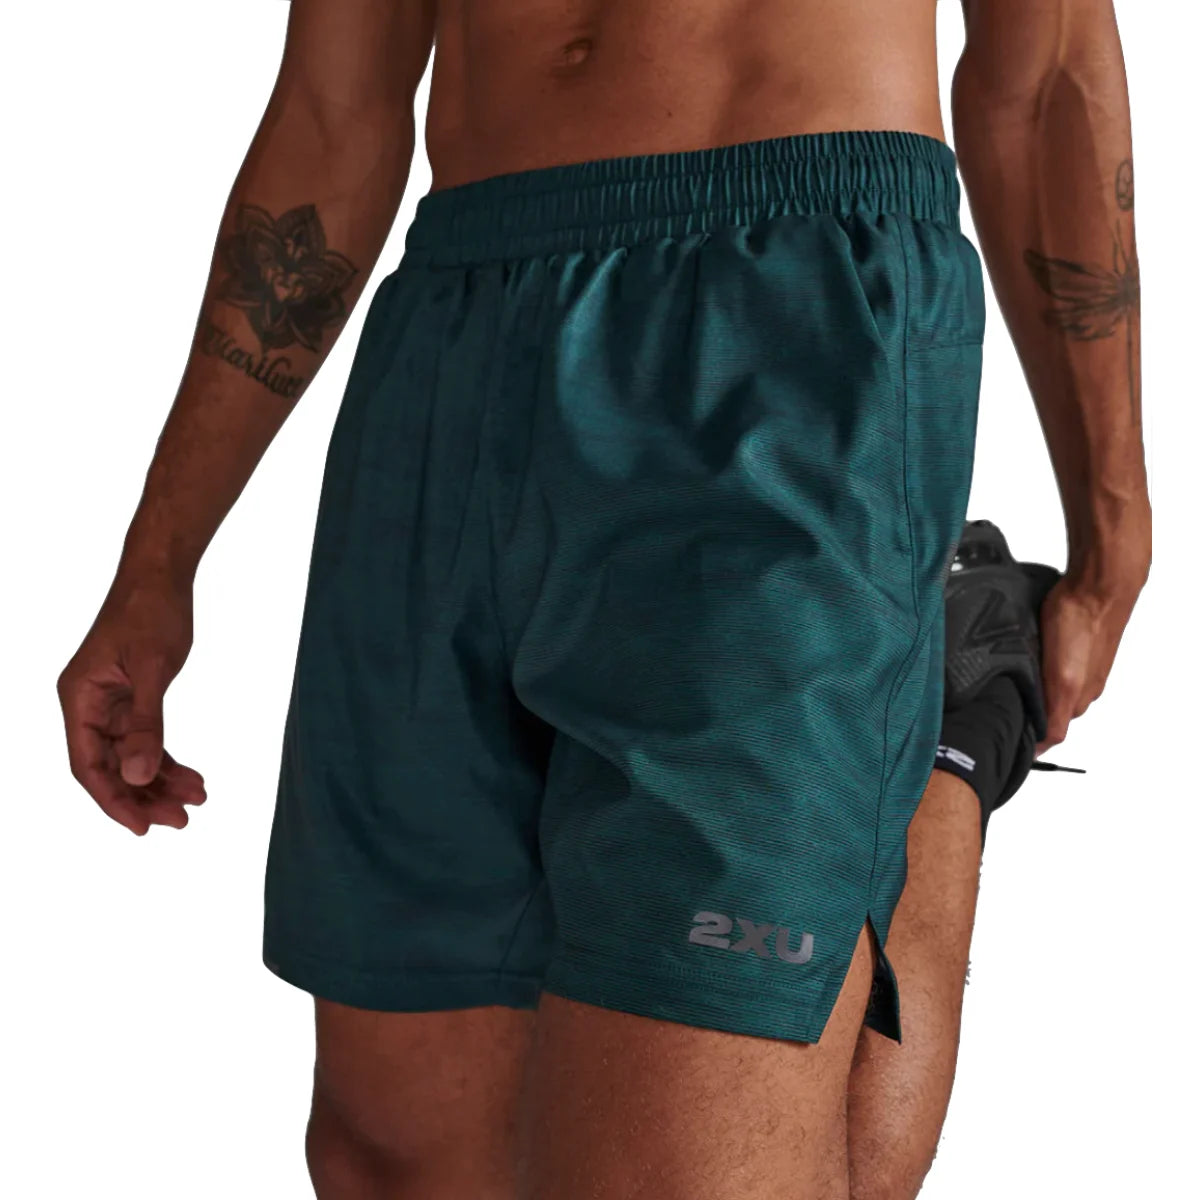 Men's 2XU Aero 7" Shorts